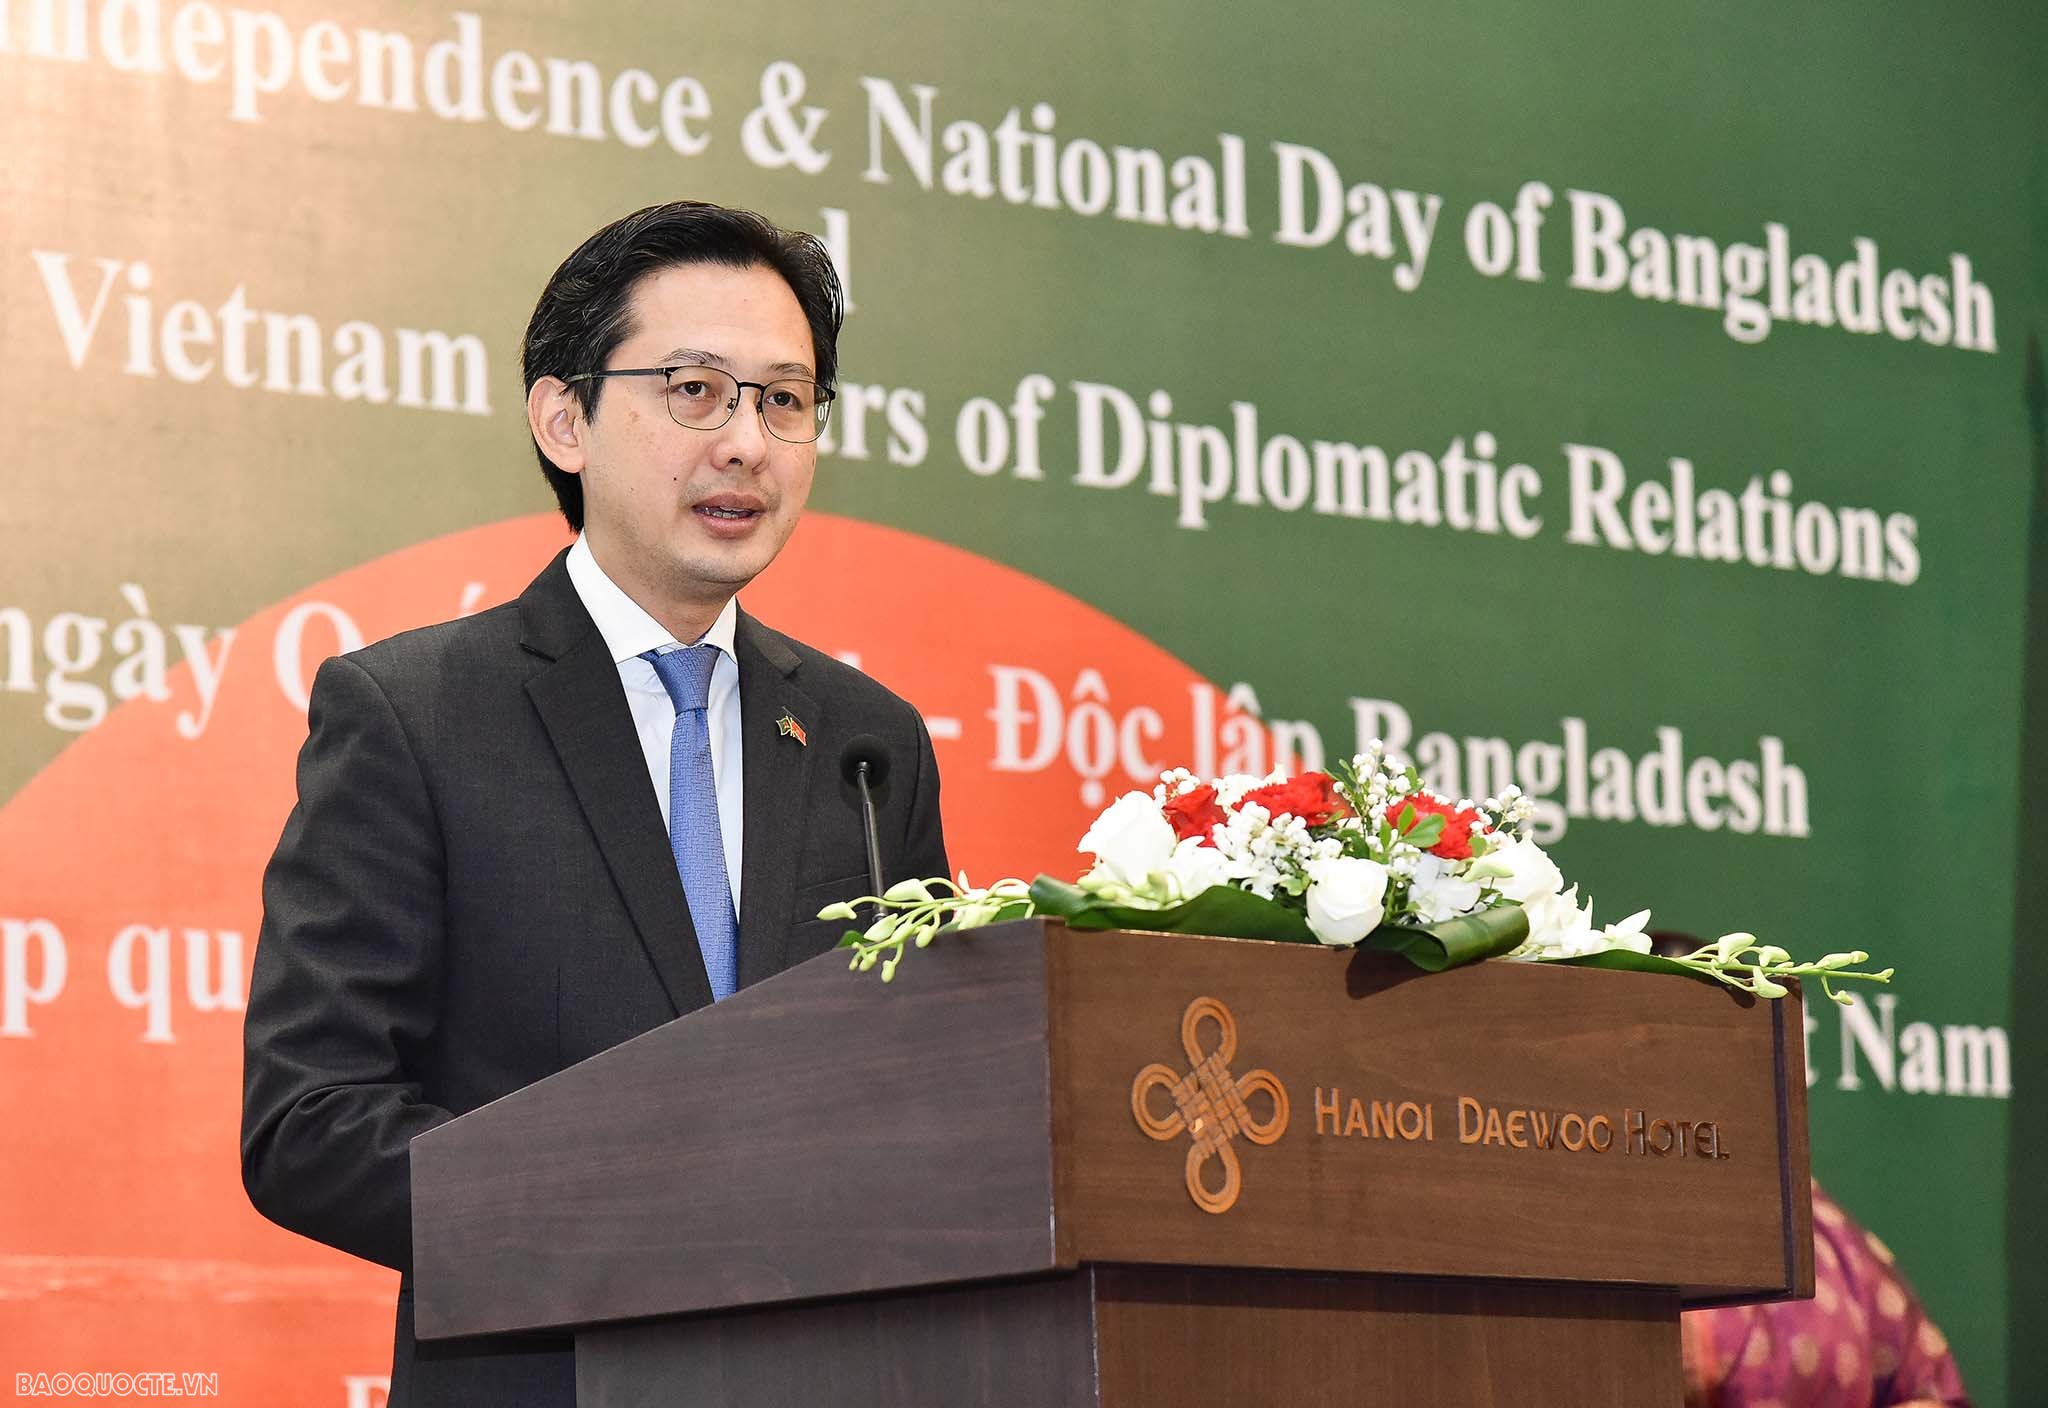 Việt Nam-Bangladesh: Kỳ vọng vào những cơ hội hợp tác mới trong 50 năm tiếp theo và hơn thế nữa